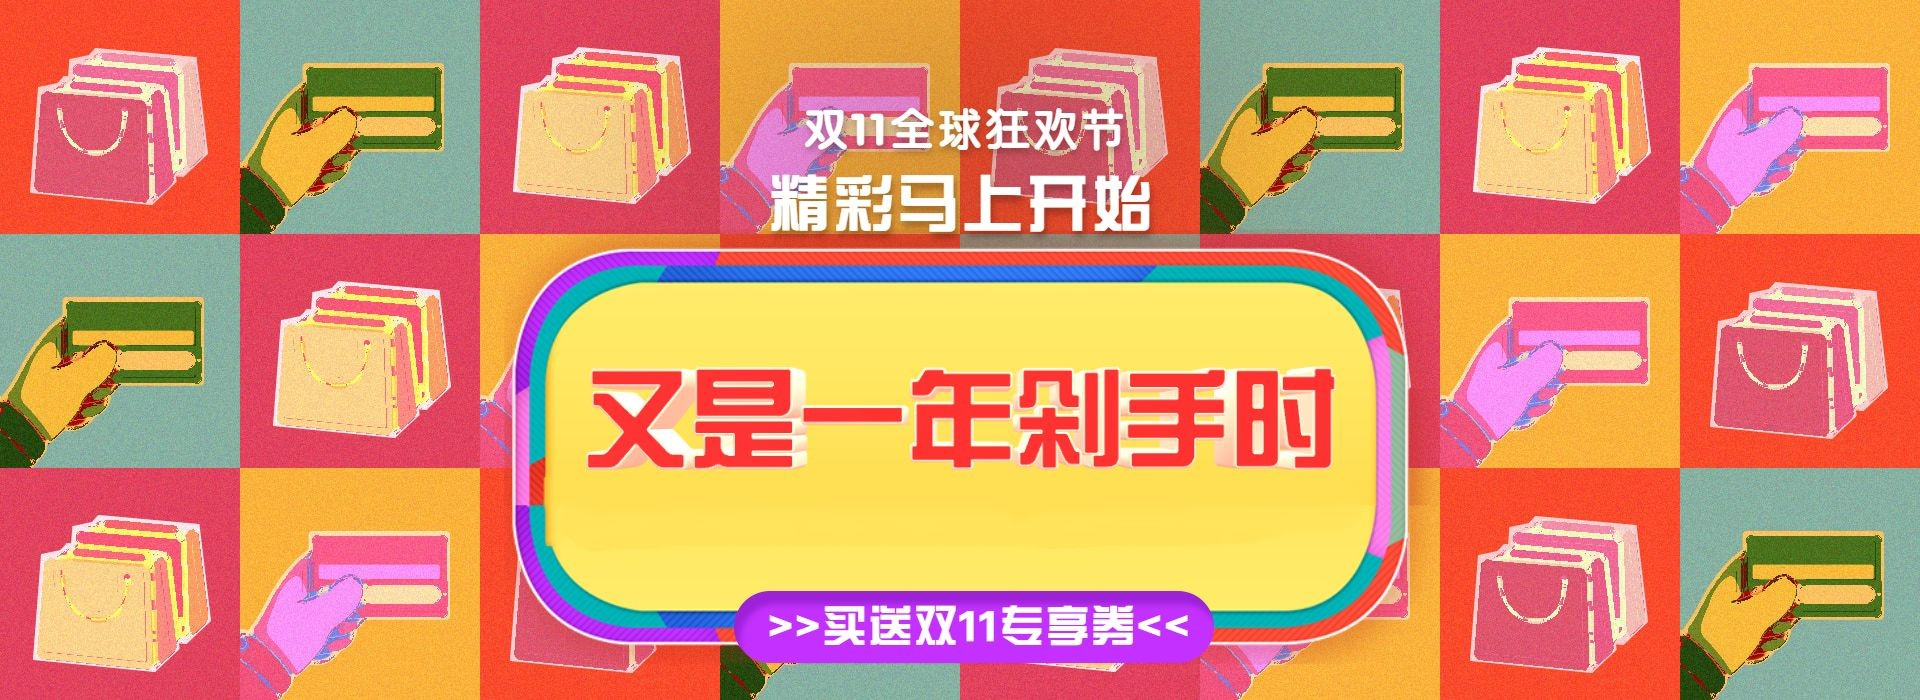 双十一预售狂欢酷炫创意电商海报banner